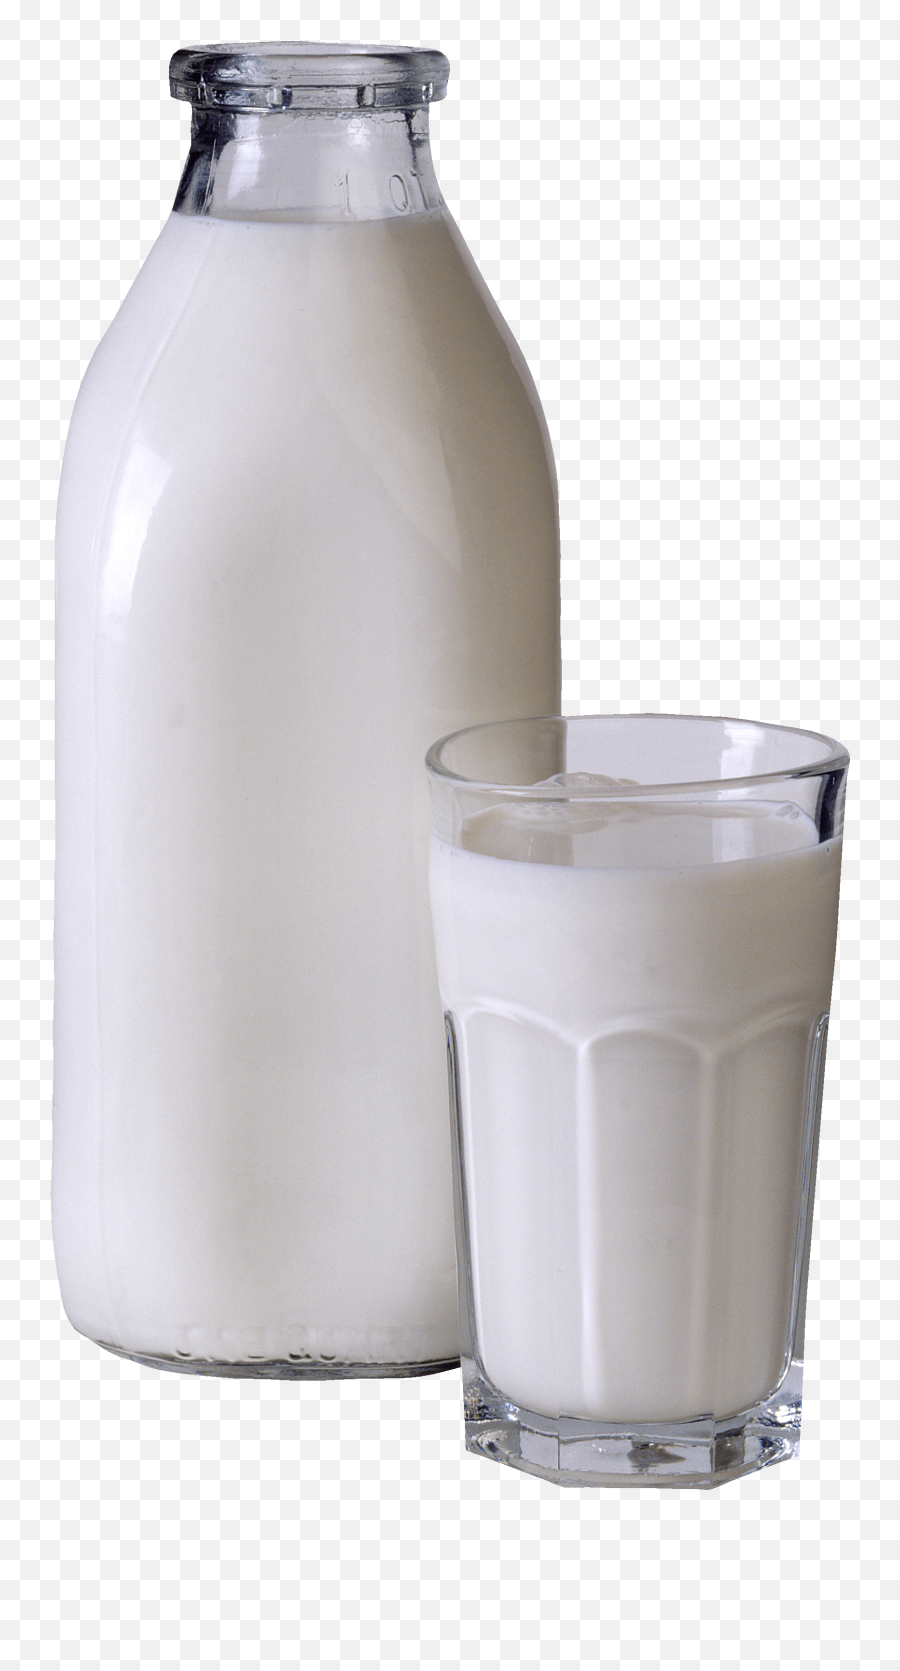 Download Milk Glass Bottle Png Hq Image Freepngimg - Diet,Got Milk Png